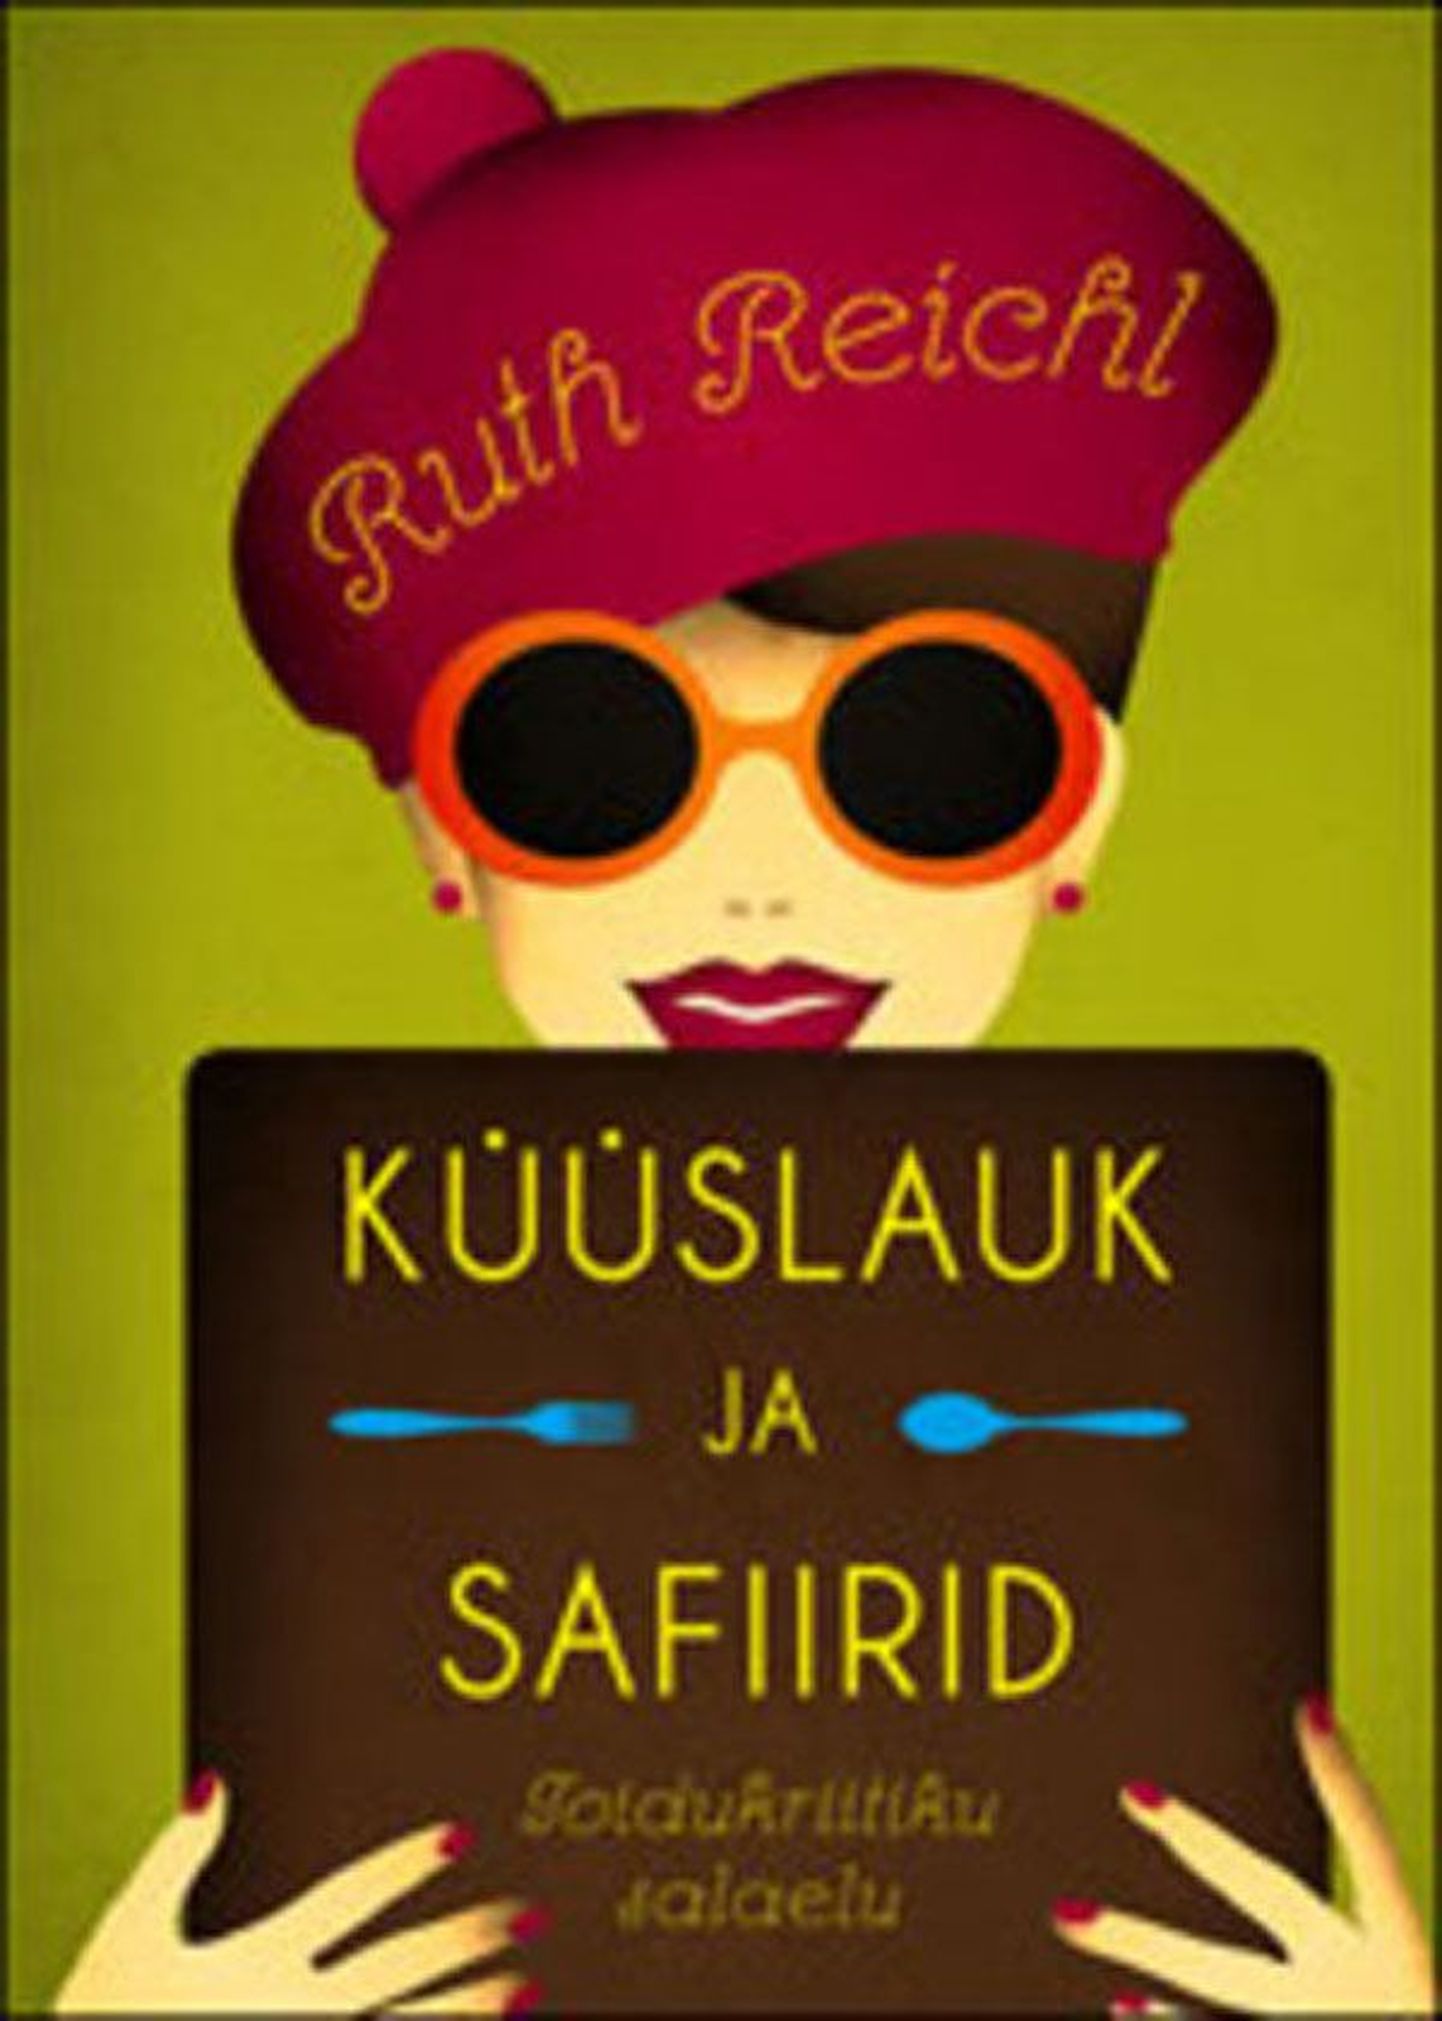 Raamat
Ruth Reichl 
«Küüslauk ja safiirid. Toidukriitiku salaelu»
Tõlkinud Lii ja 
Talvi Tõnismann
Varrak
344 lk